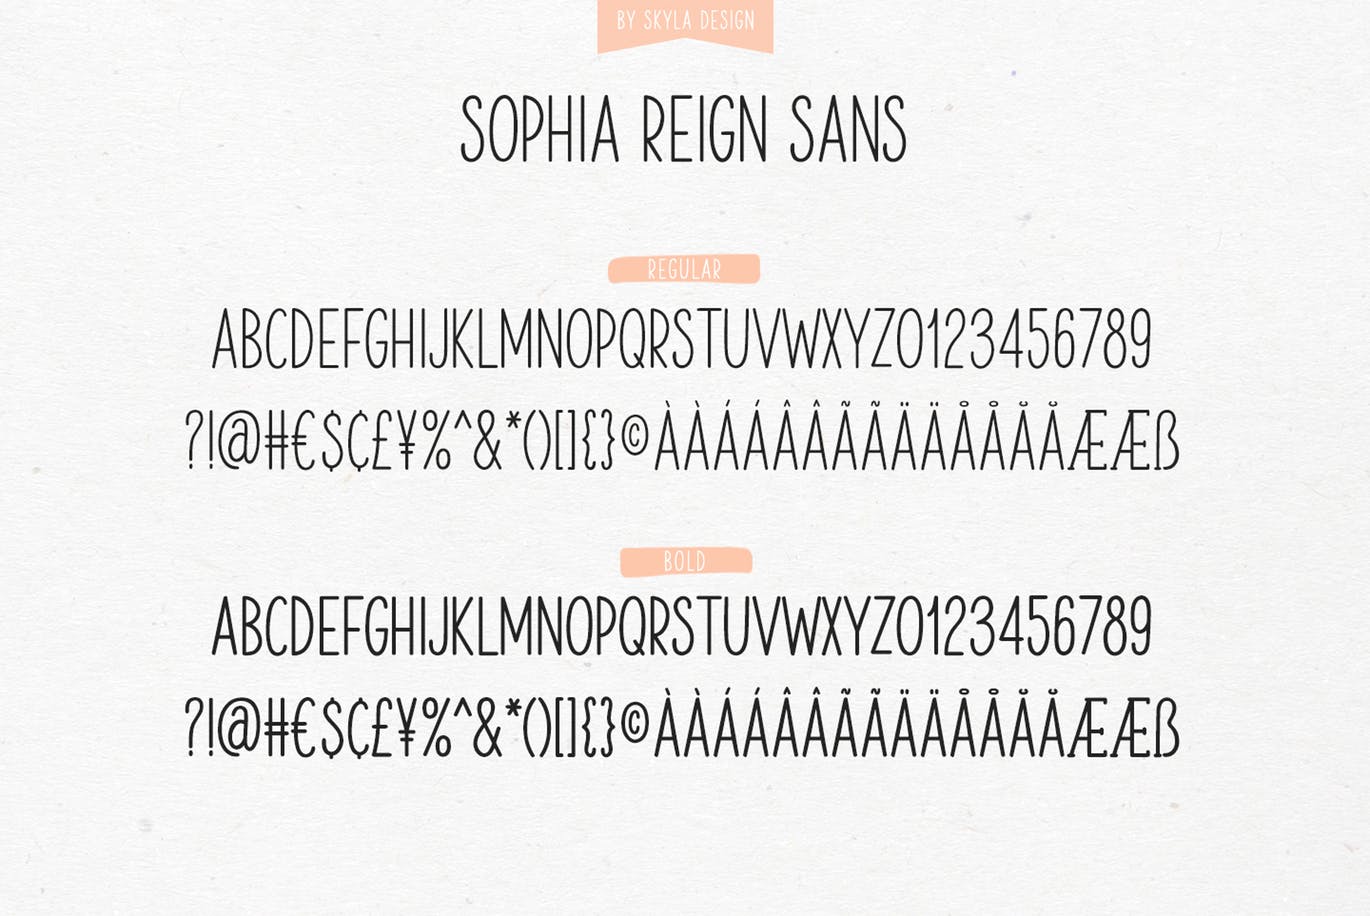 英文钢笔签名字体16图库精选&大写字母正楷字体16图库精选二重奏 Sophia Reign signature font duo插图(1)